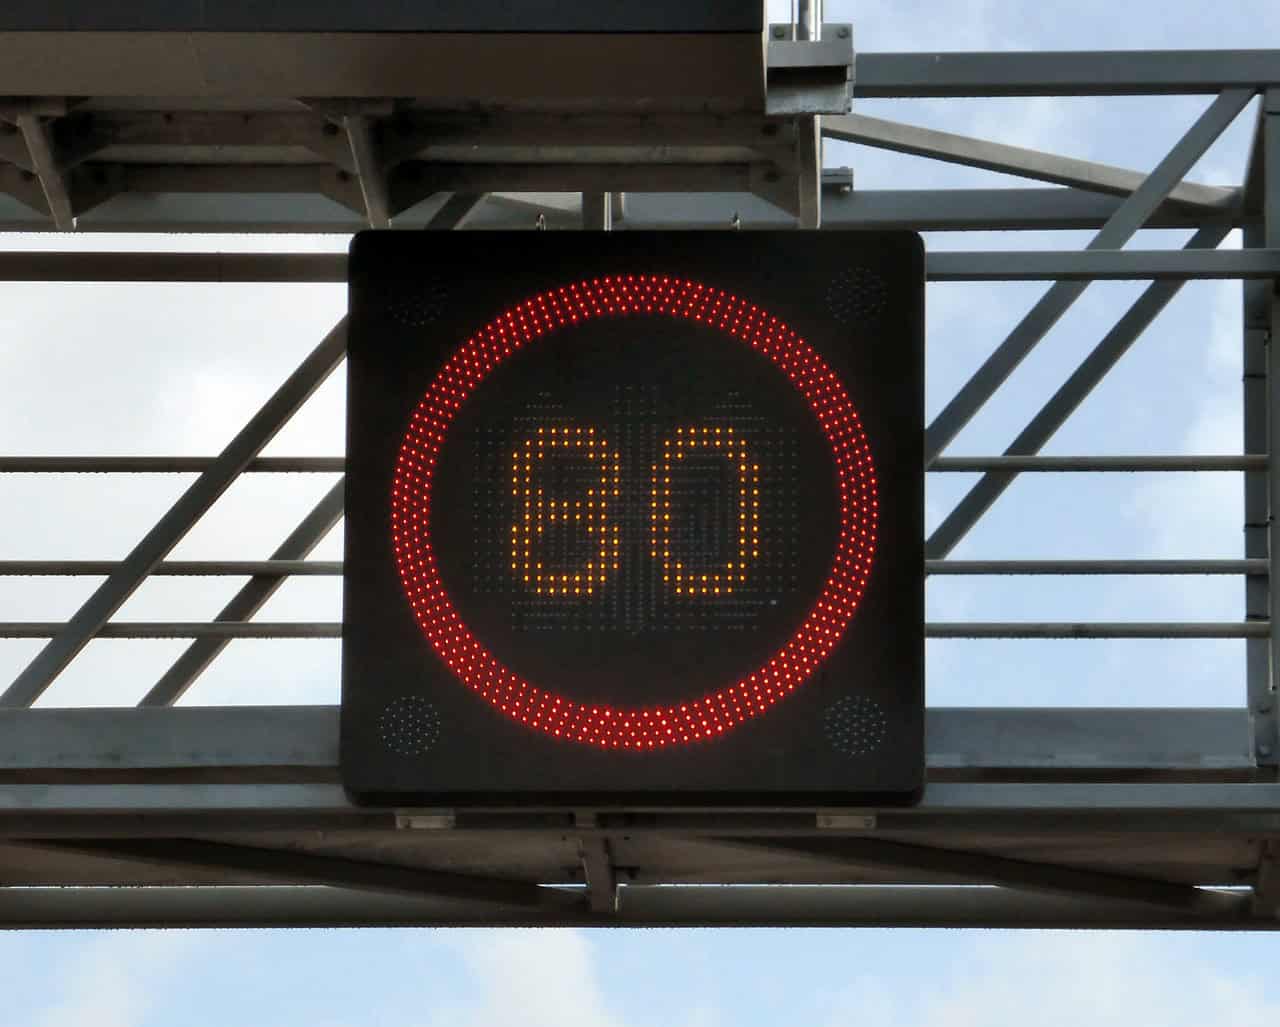 Illuminated Speed Limit Signs